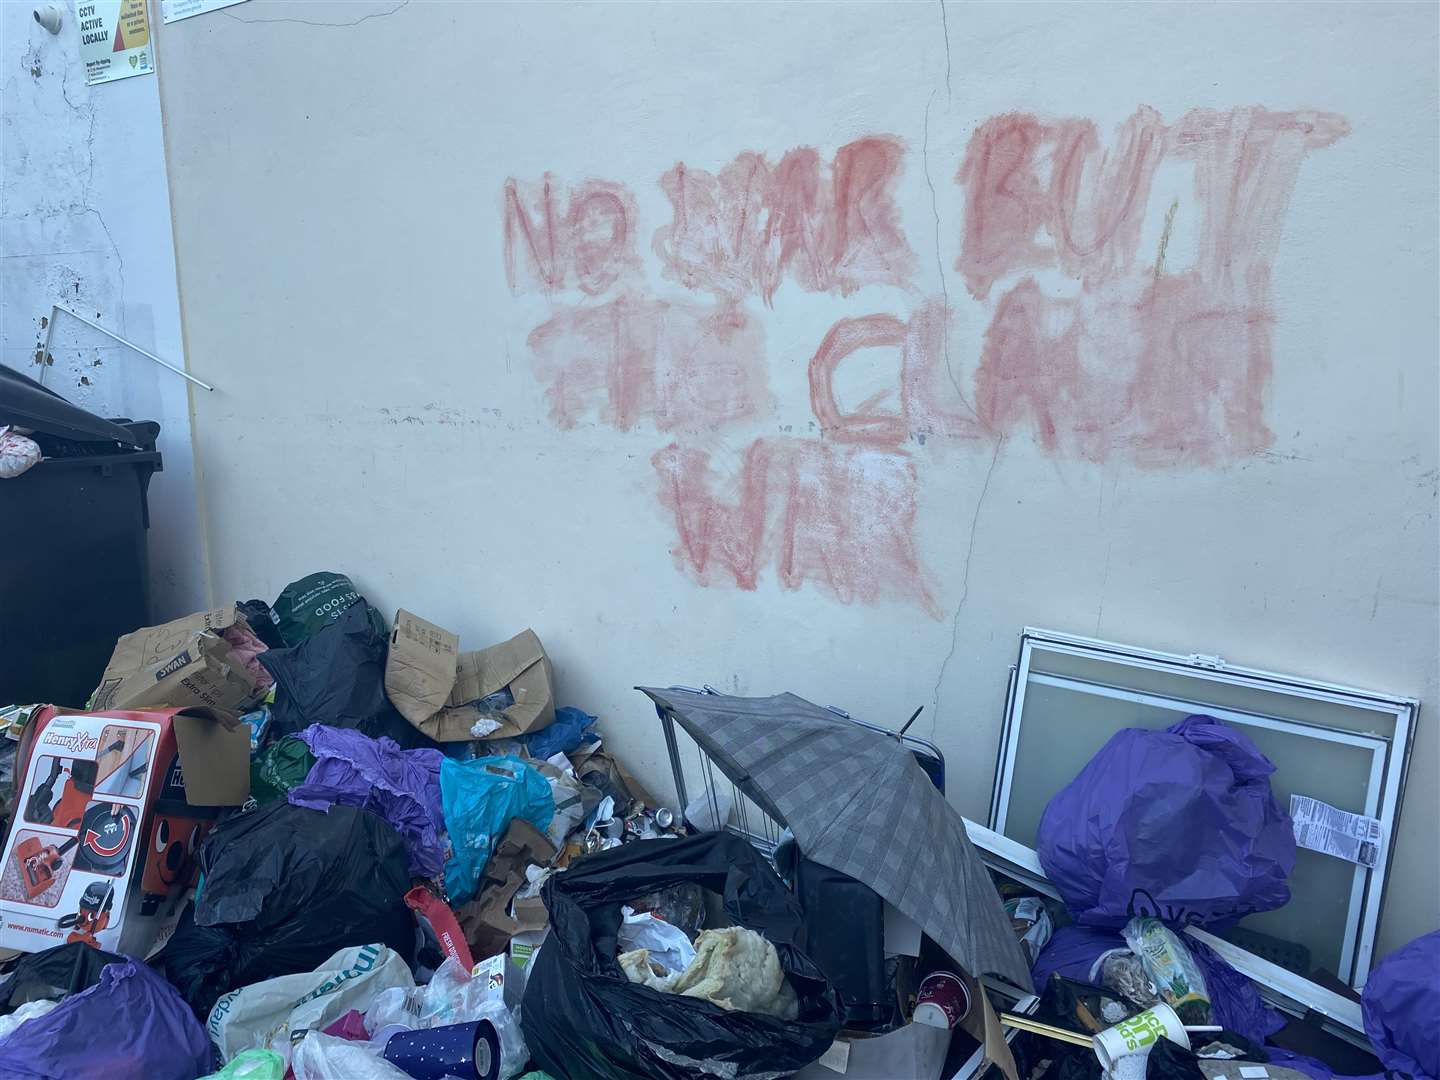 Graffiti reads 'No War but the Class War'